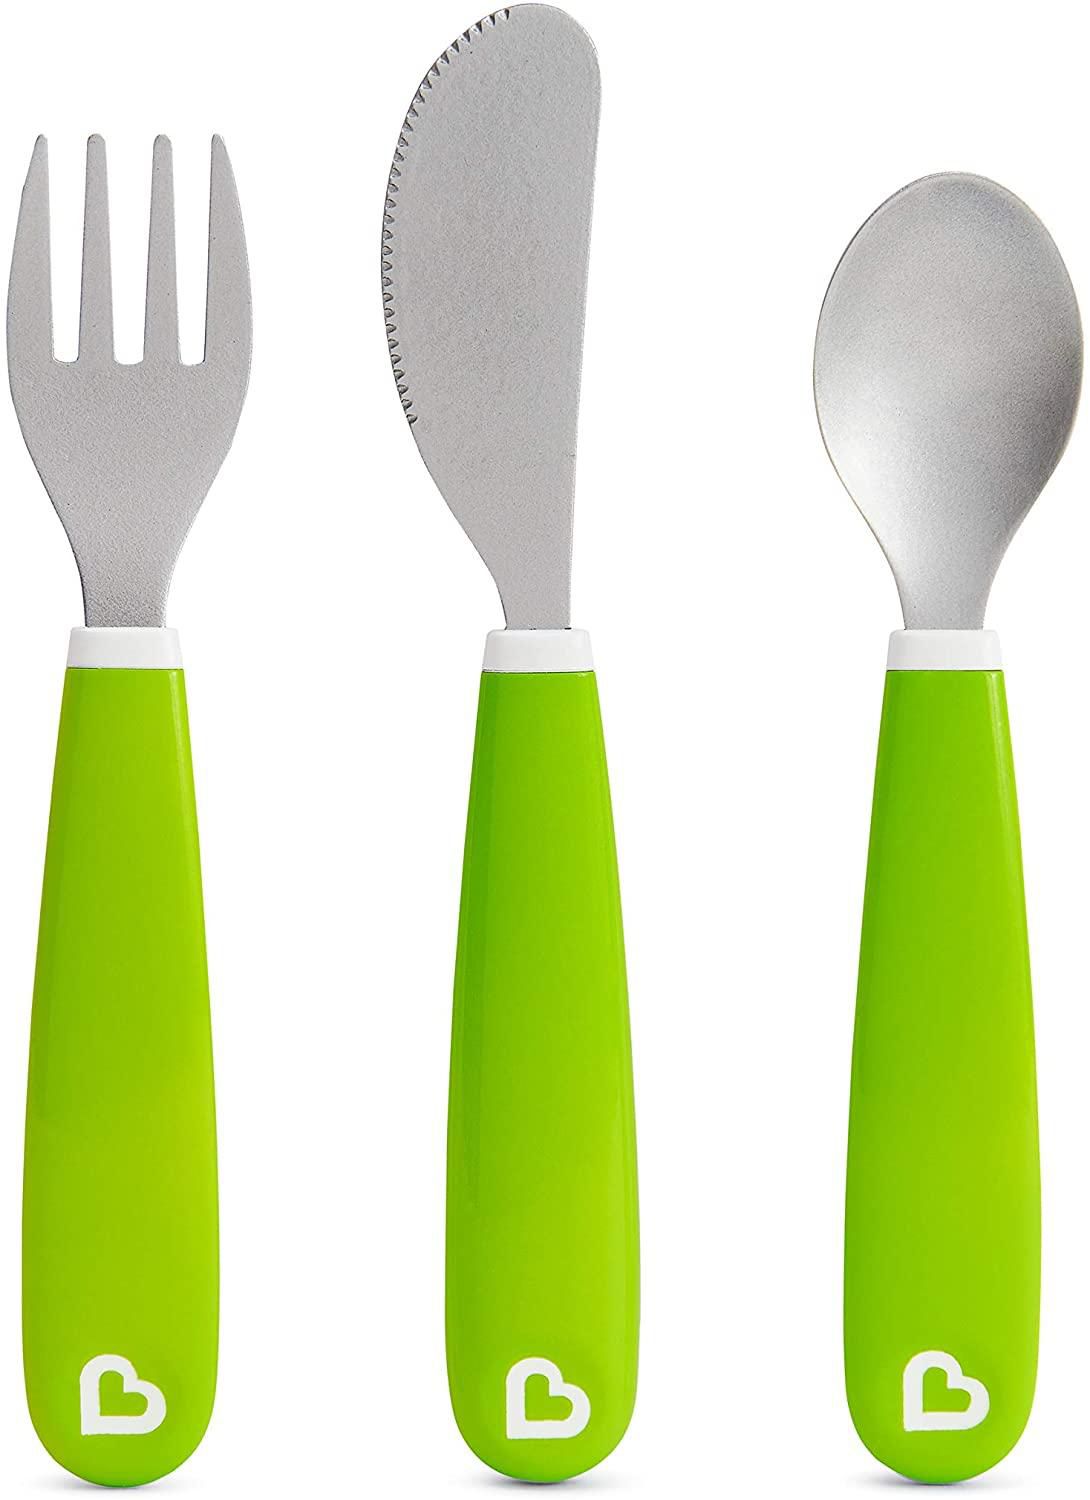 Cutlery Kit Green, Munchkin, Green